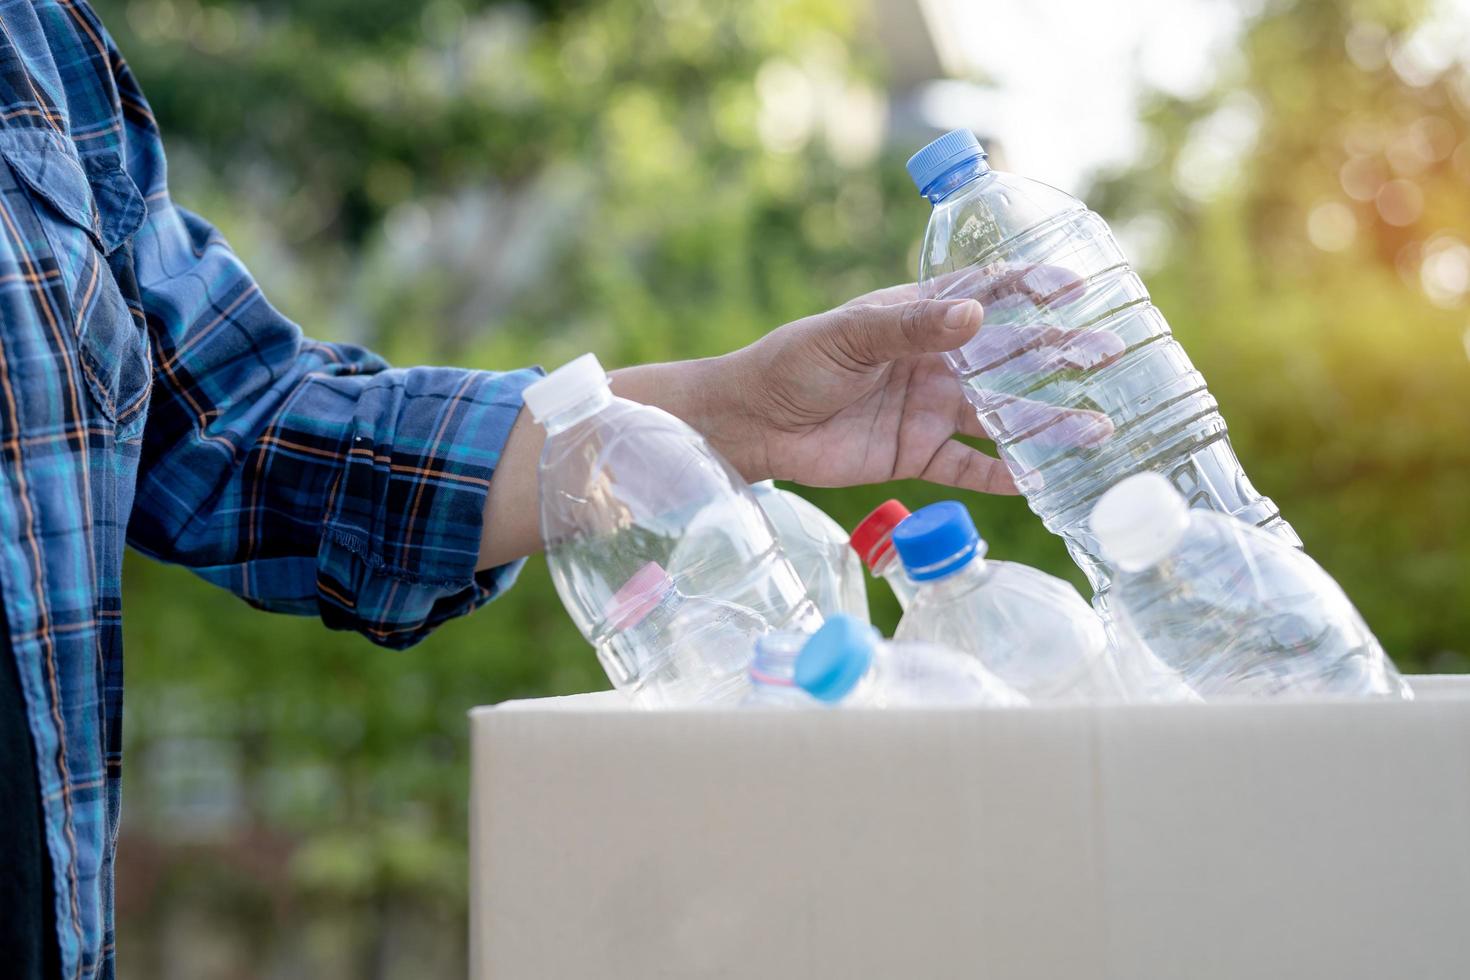 aziatische vrouw vrijwilliger draagt water plastic flessen in vuilnisbak afval in park, recycle afval milieu ecologie concept. foto